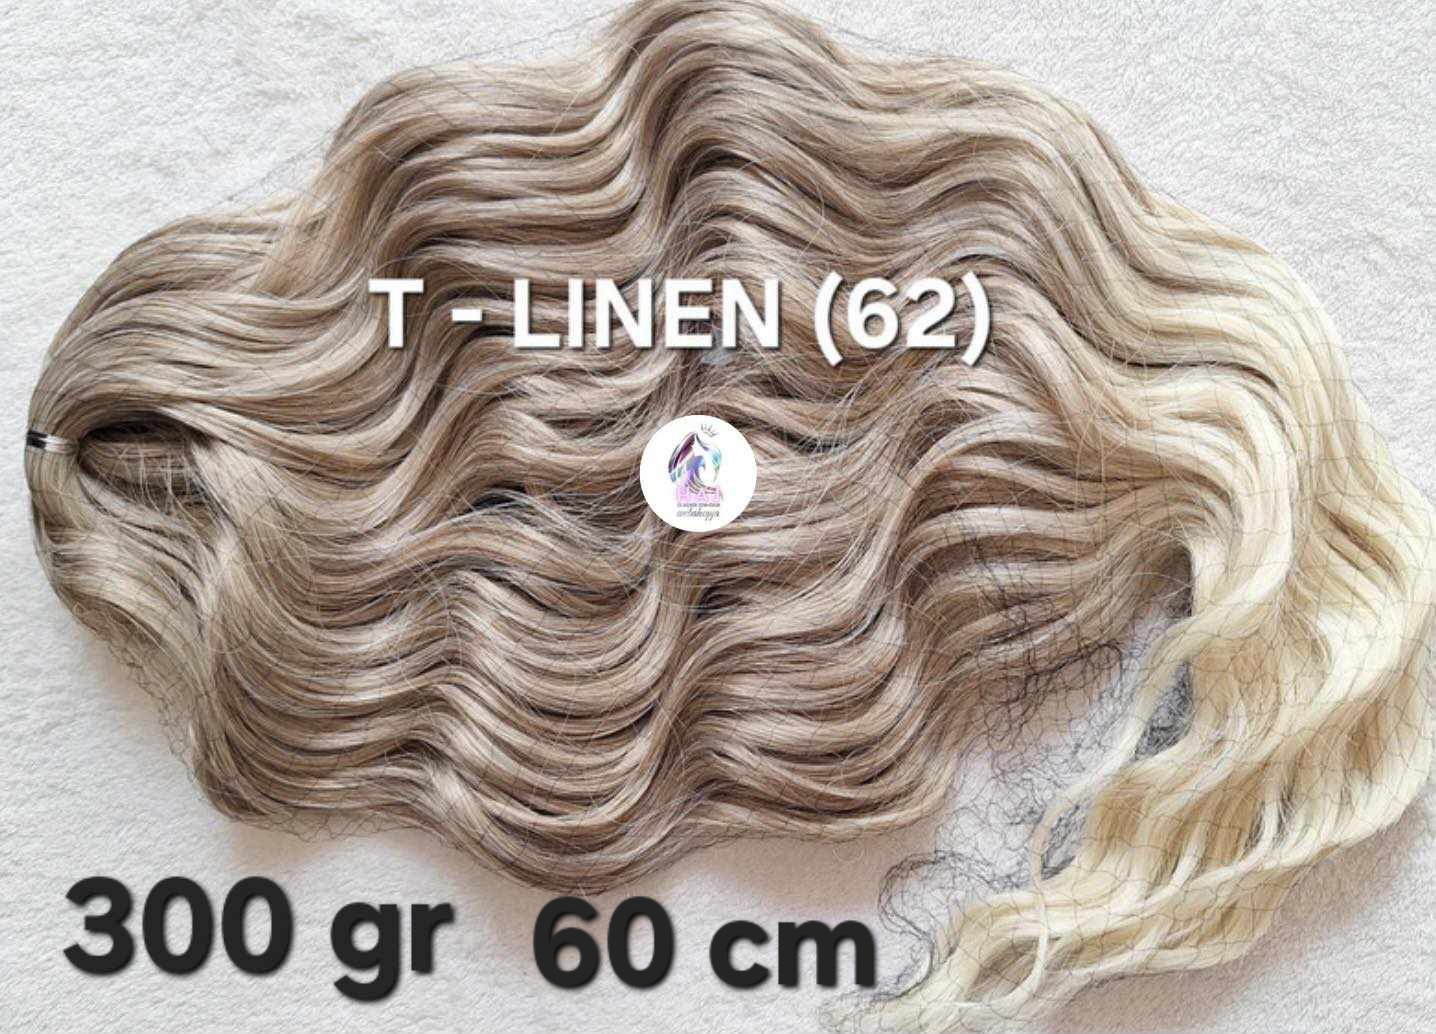 T-LINEN (62) 300 gr 60 cm - 12.000 Ft